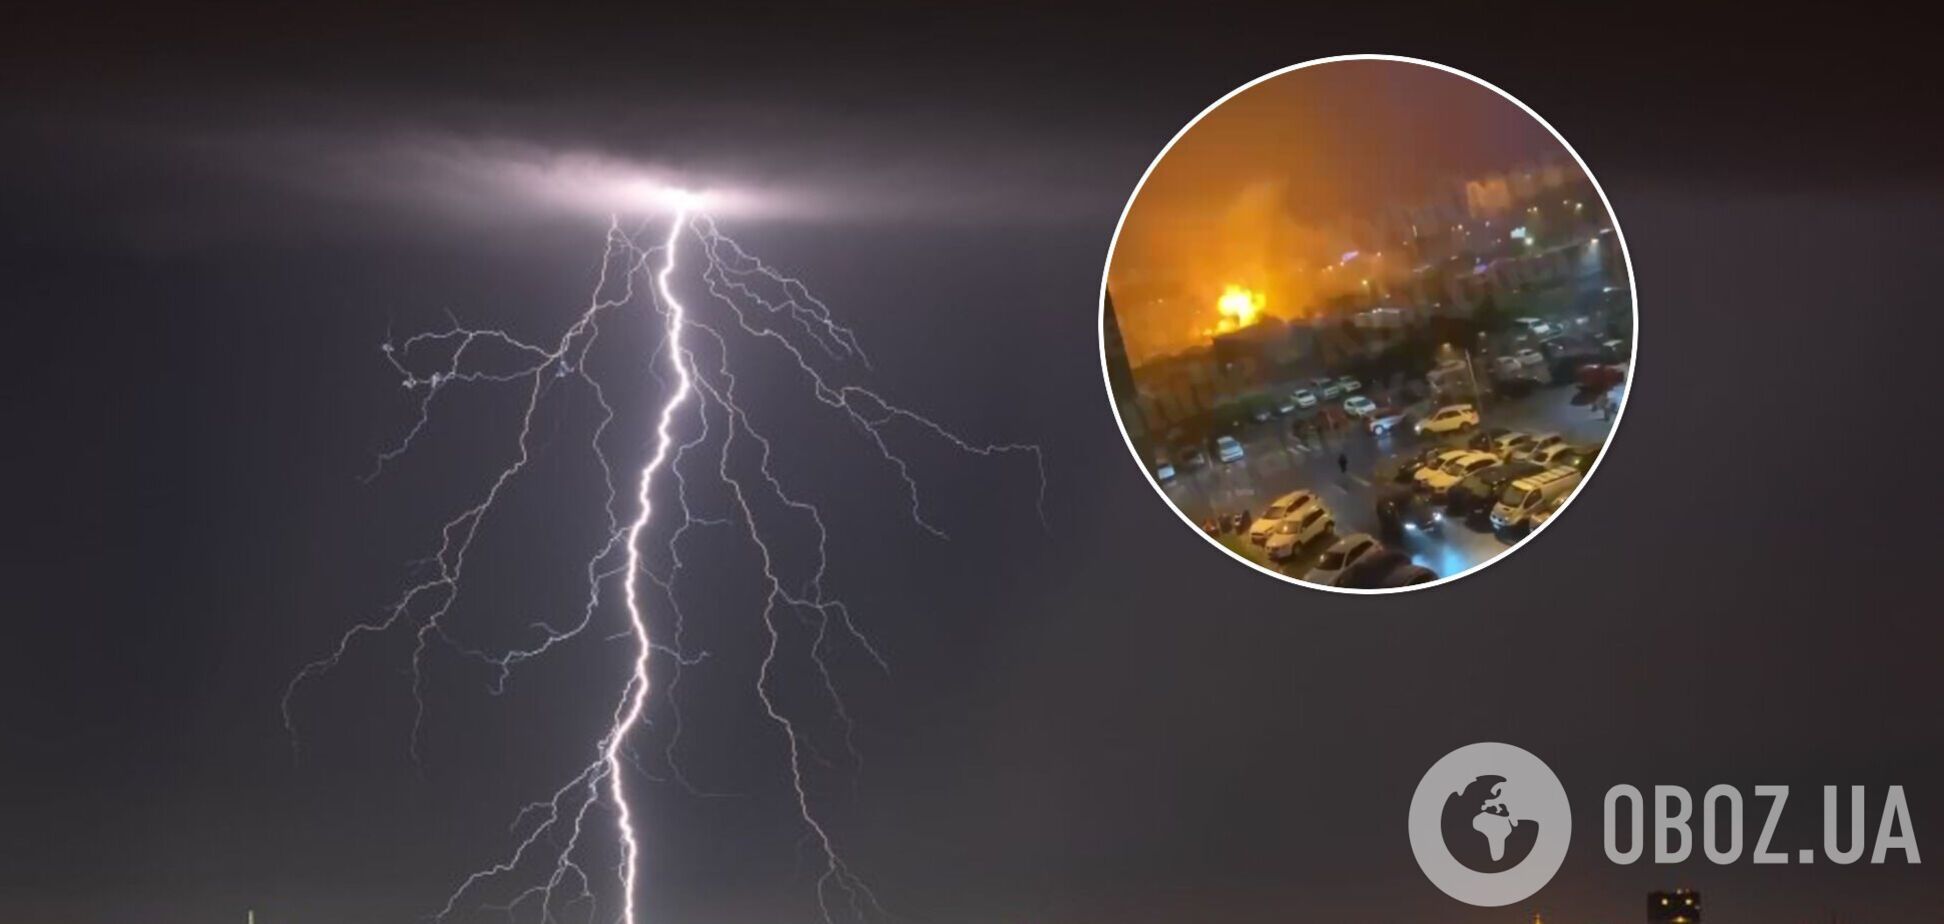 Пожар возле киевского кафе: спасатели сообщили подробности об ударе молнии. Видео 18+